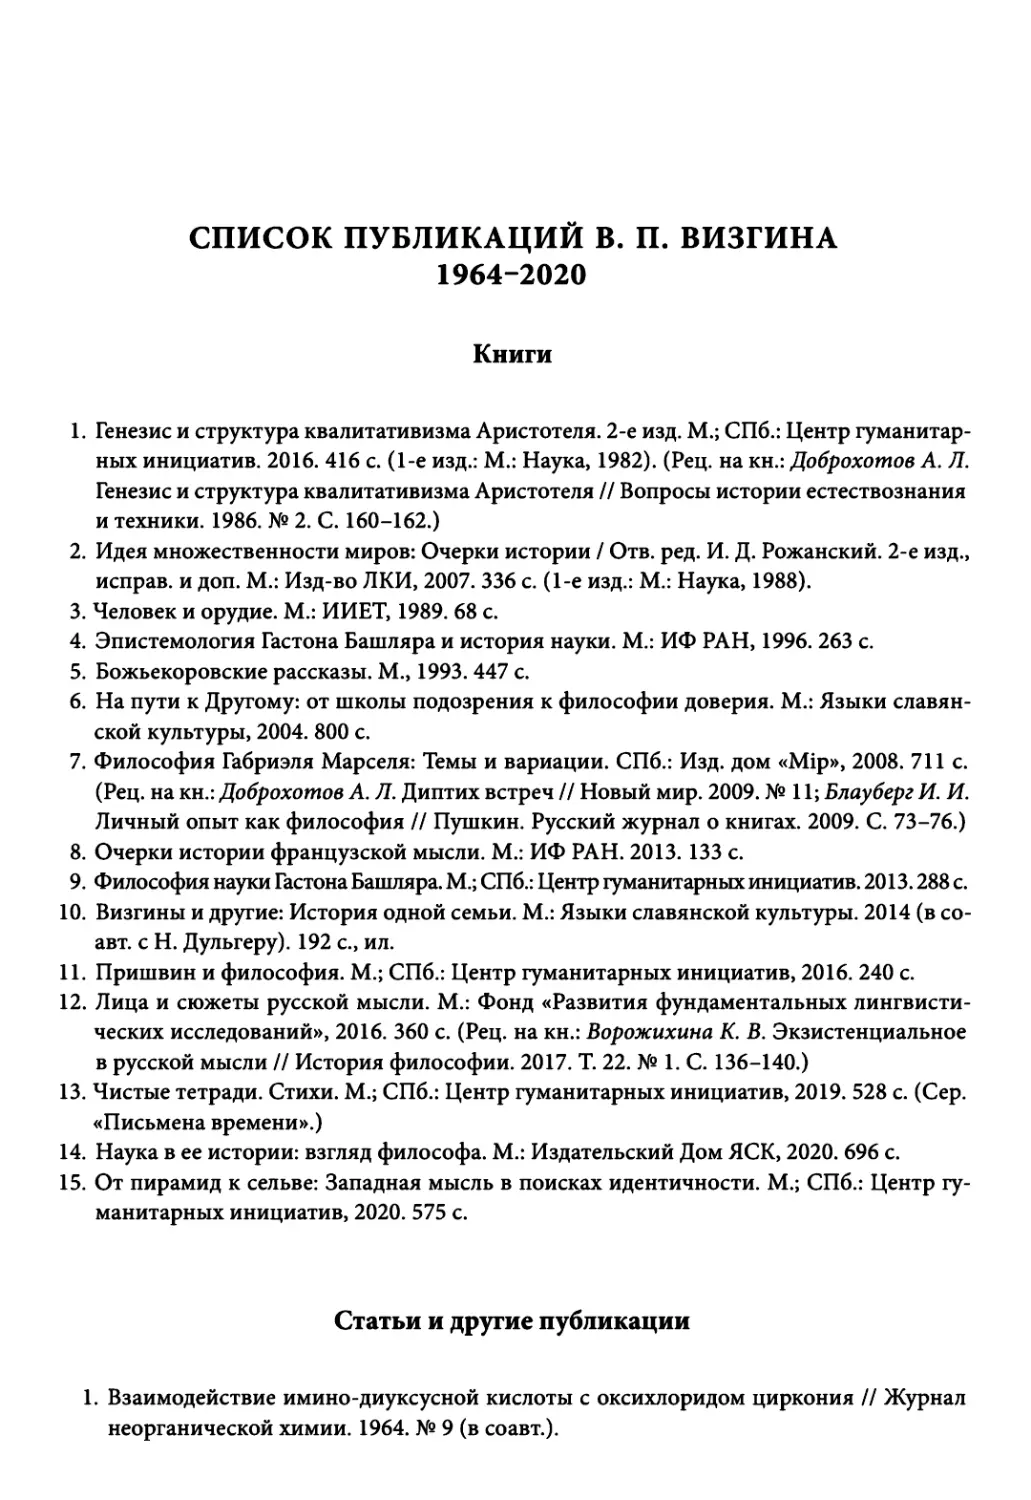 Список публикаций В. П. Визгина 1964-2020